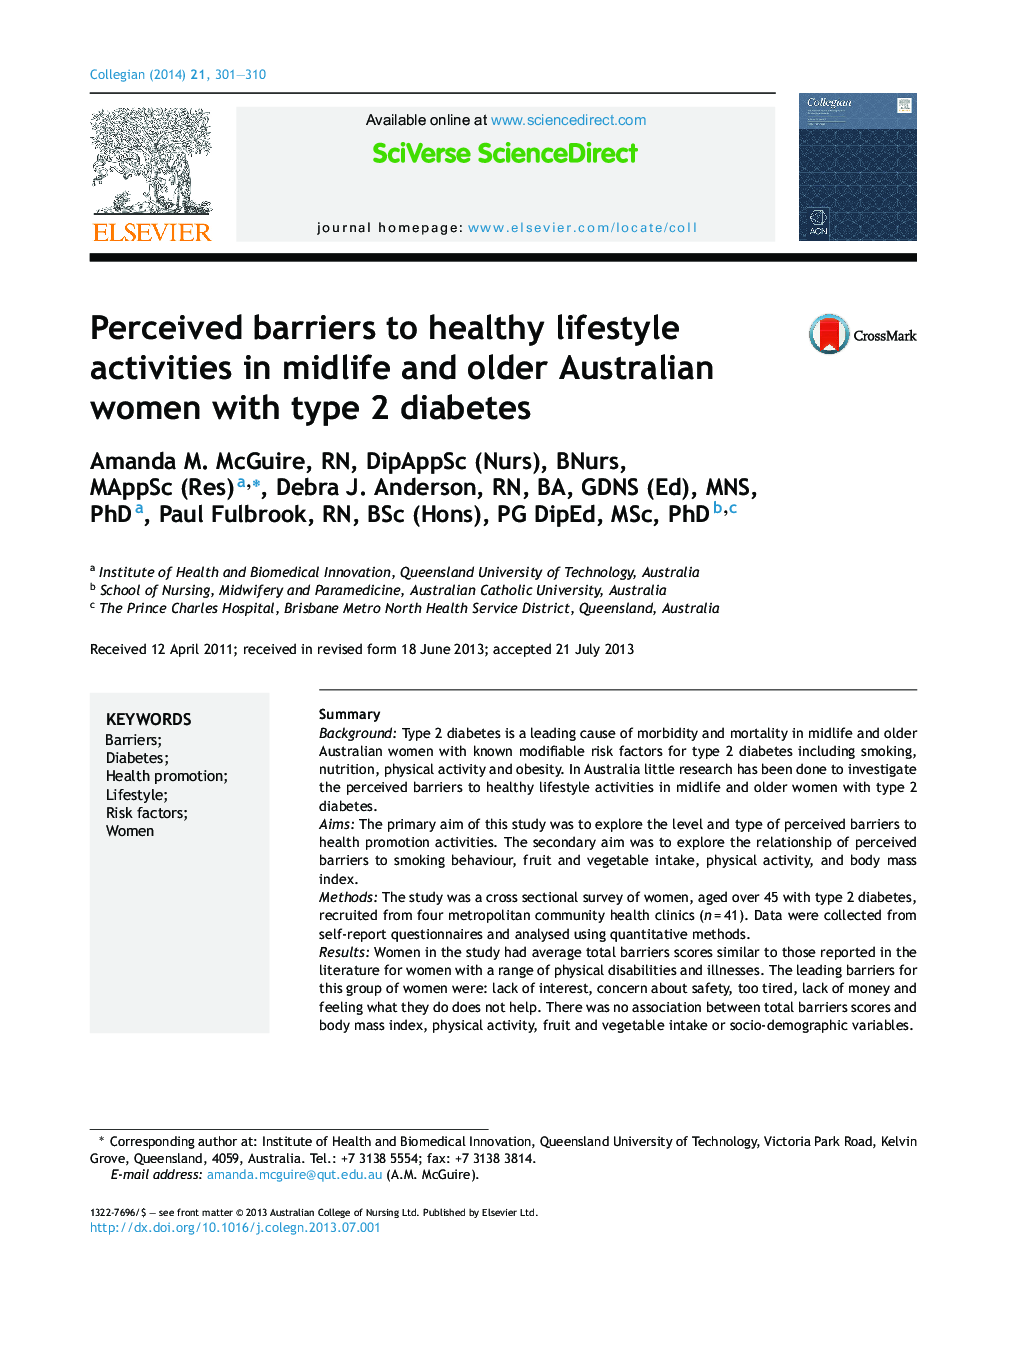 موانع درک شده برای فعالیت های شیوه زندگی سالم در زنان استرالیایی میانسال و سالمند با دیابت نوع 2